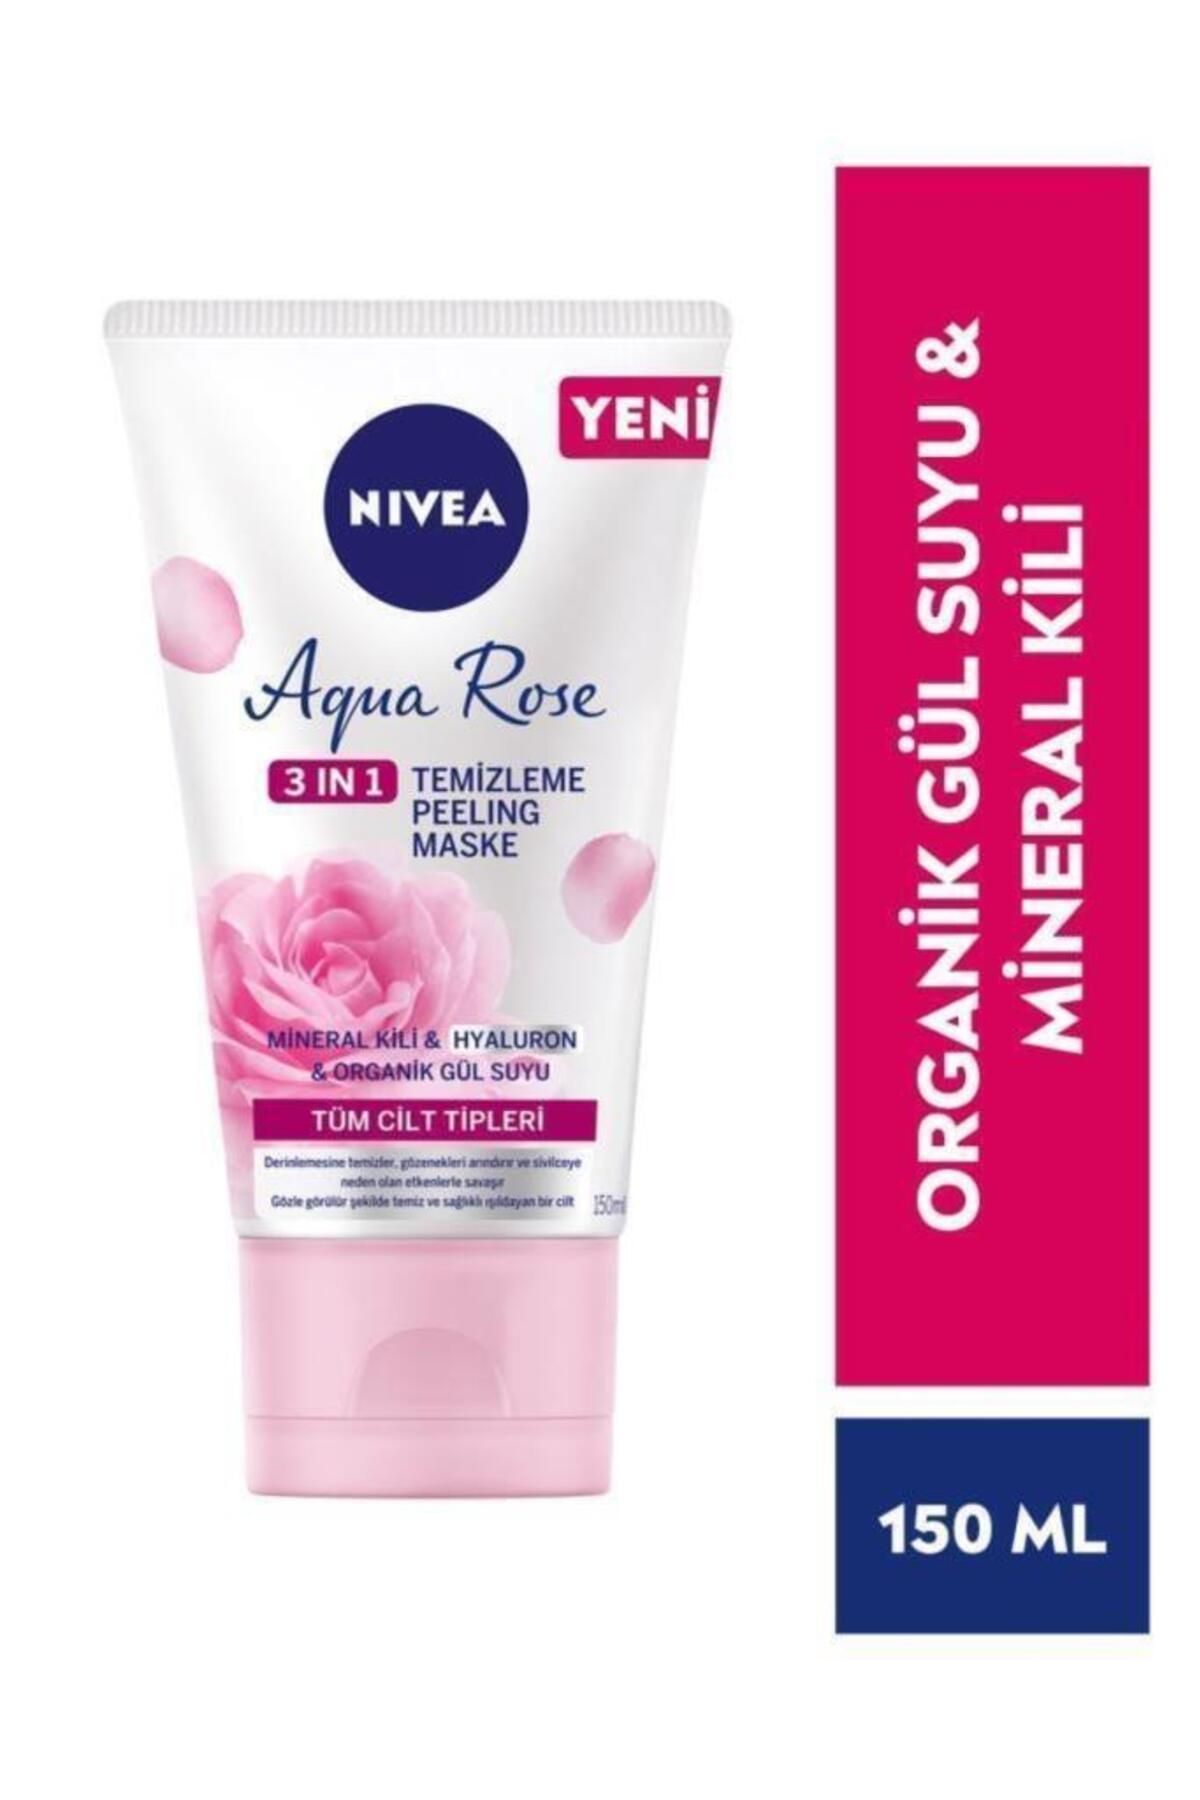 NIVEA Aqua Rose 3ü1 Arada Yüz Temizleme Peeling Maske Gül Suyu Mineral Kili 150ml 94417